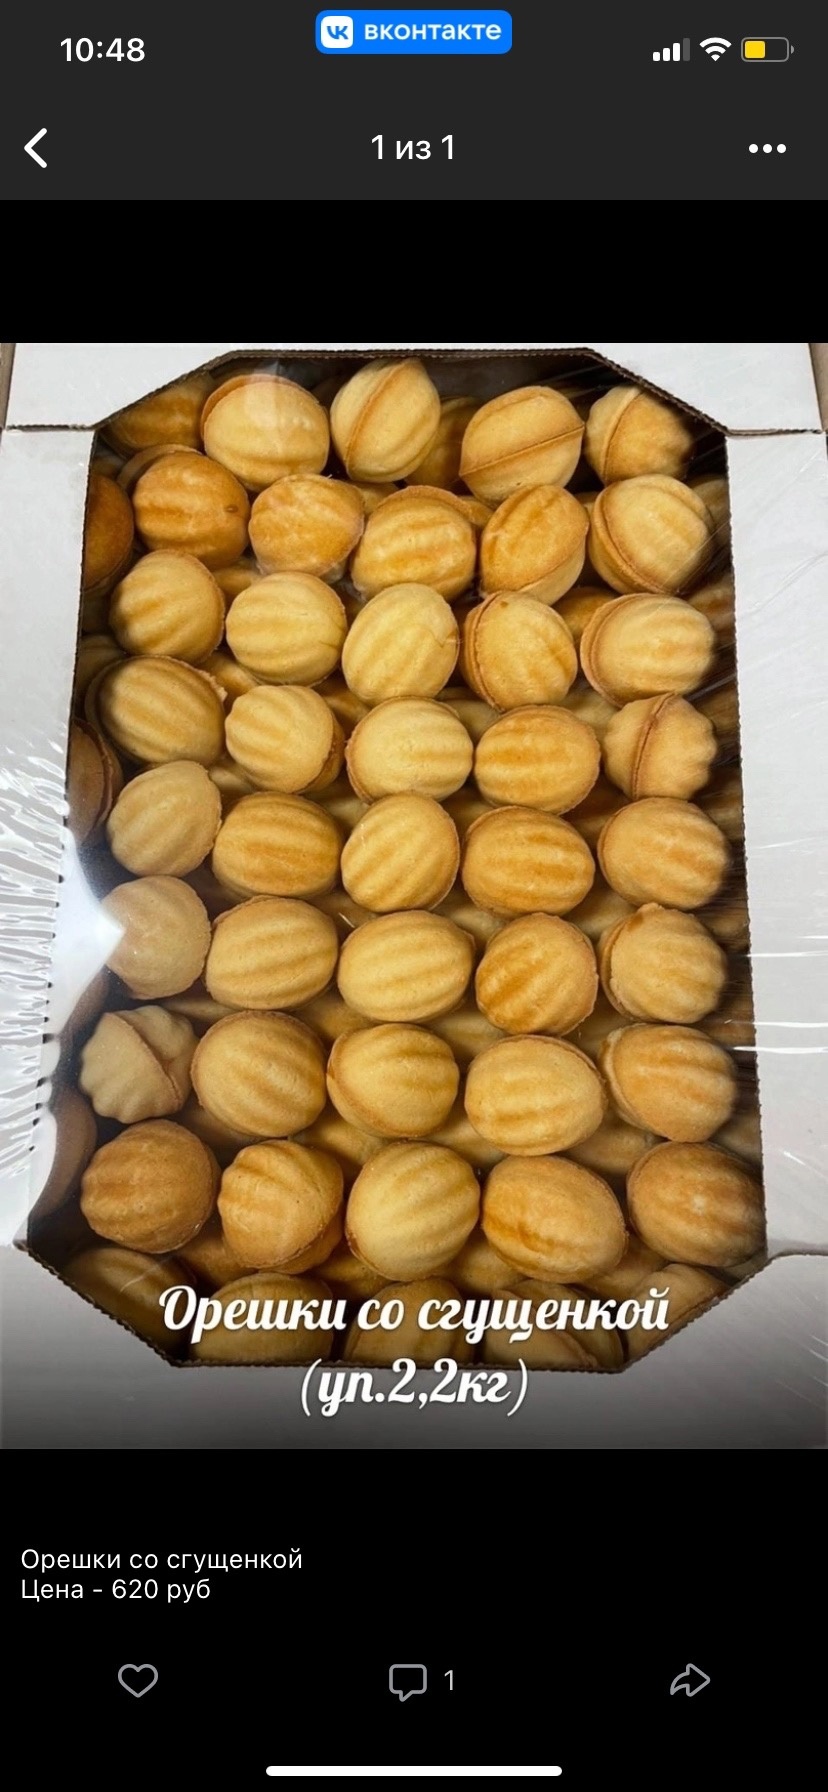 Орешки со сгущенкой вес упаковка 2.2 кг